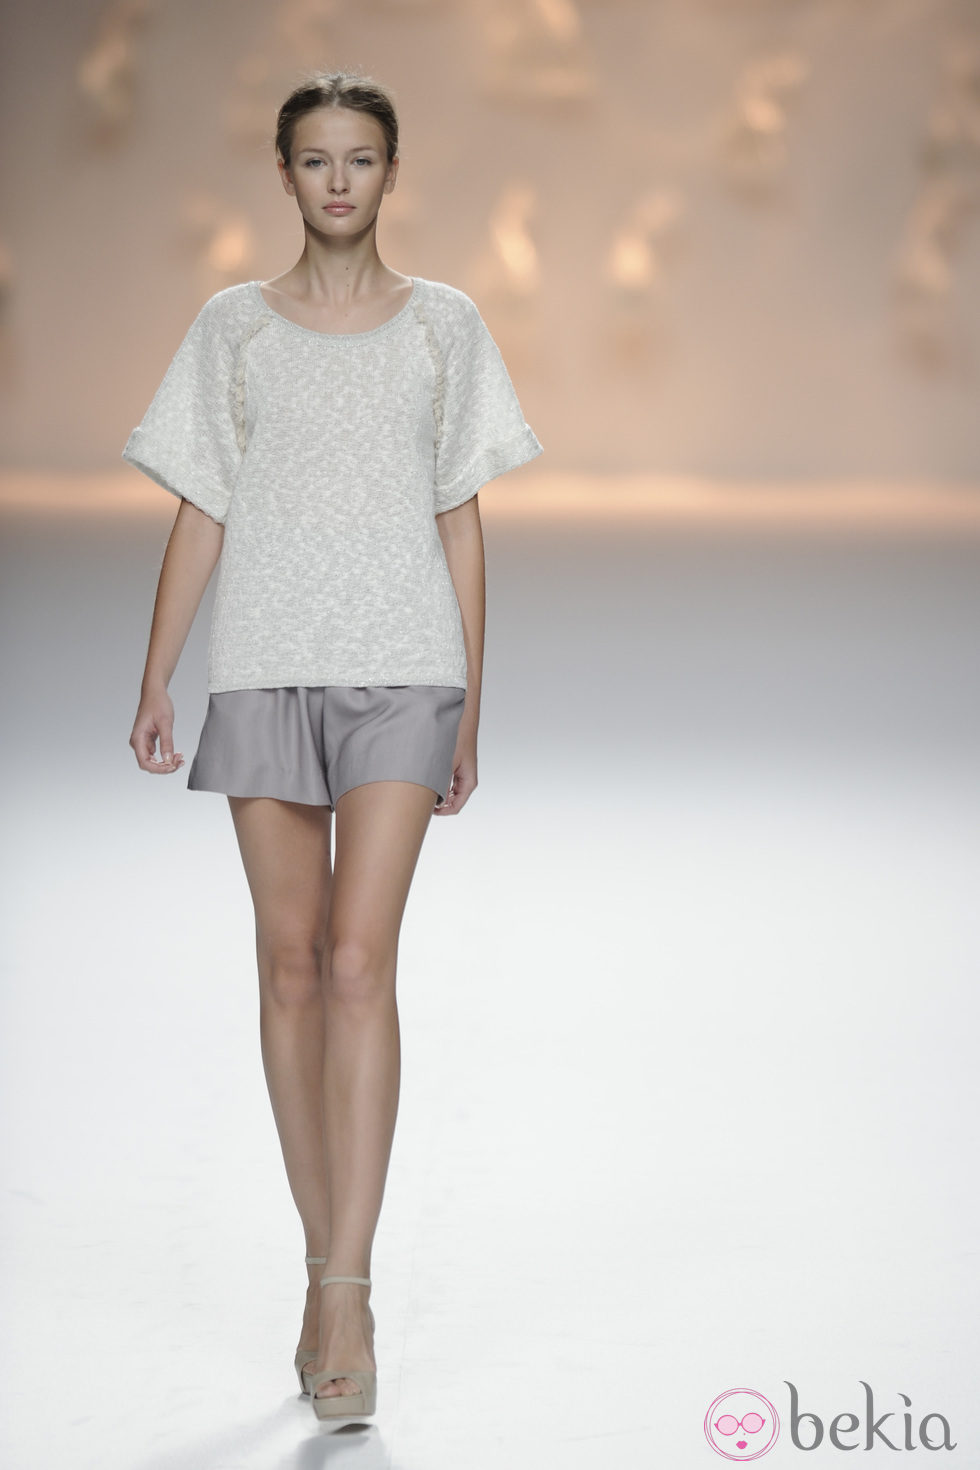 Pantalón gris corto y jersey de punto de la colección primavera/verano 2013 de Sita Murt